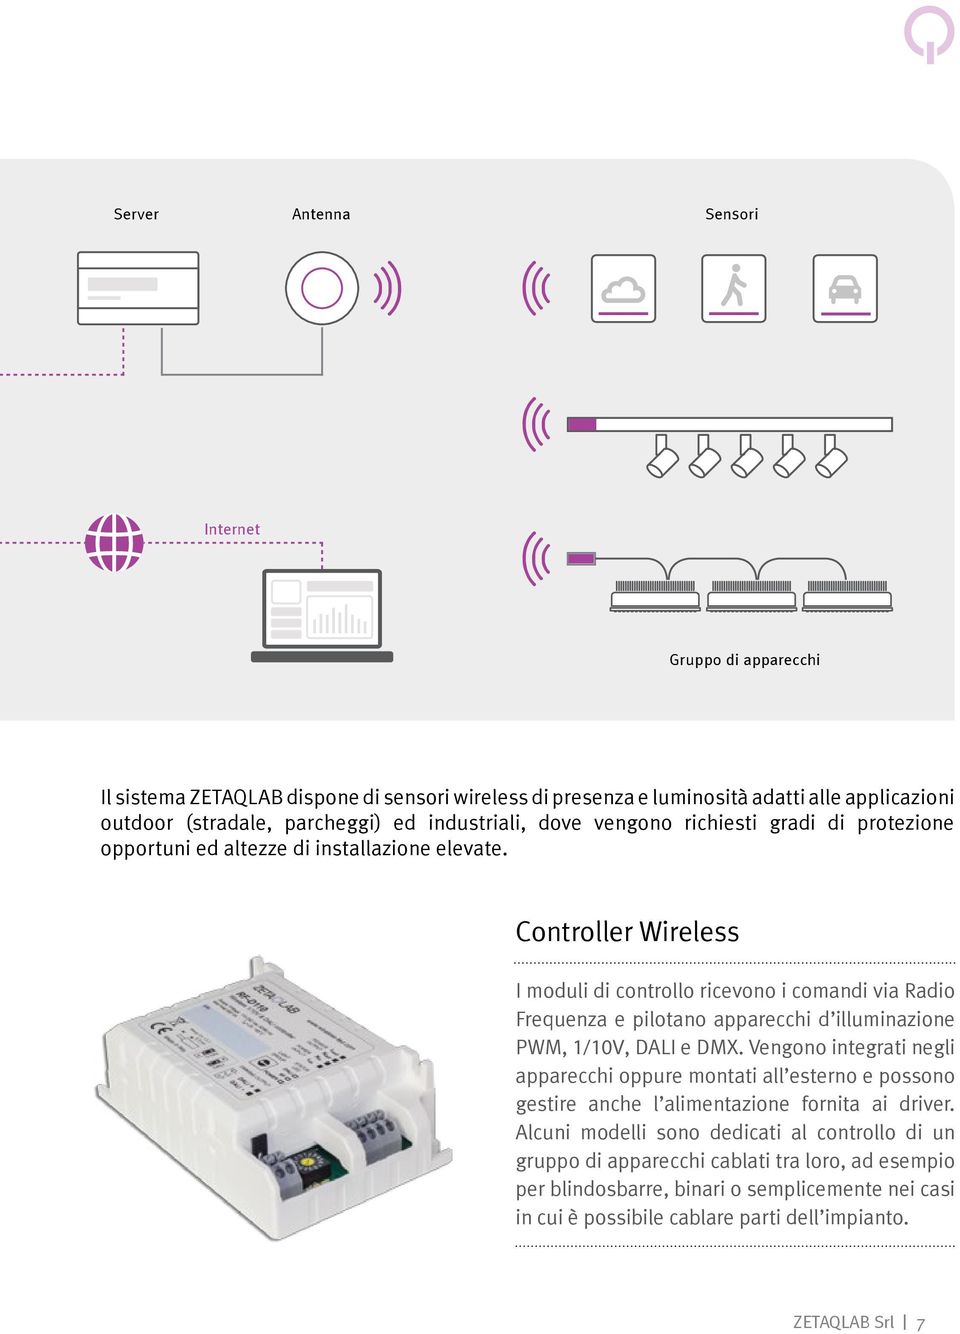 Controller Wireless I moduli di controllo ricevono i comandi via Radio Frequenza e pilotano apparecchi d illuminazione PWM, 1/10V, DALI e DMX.